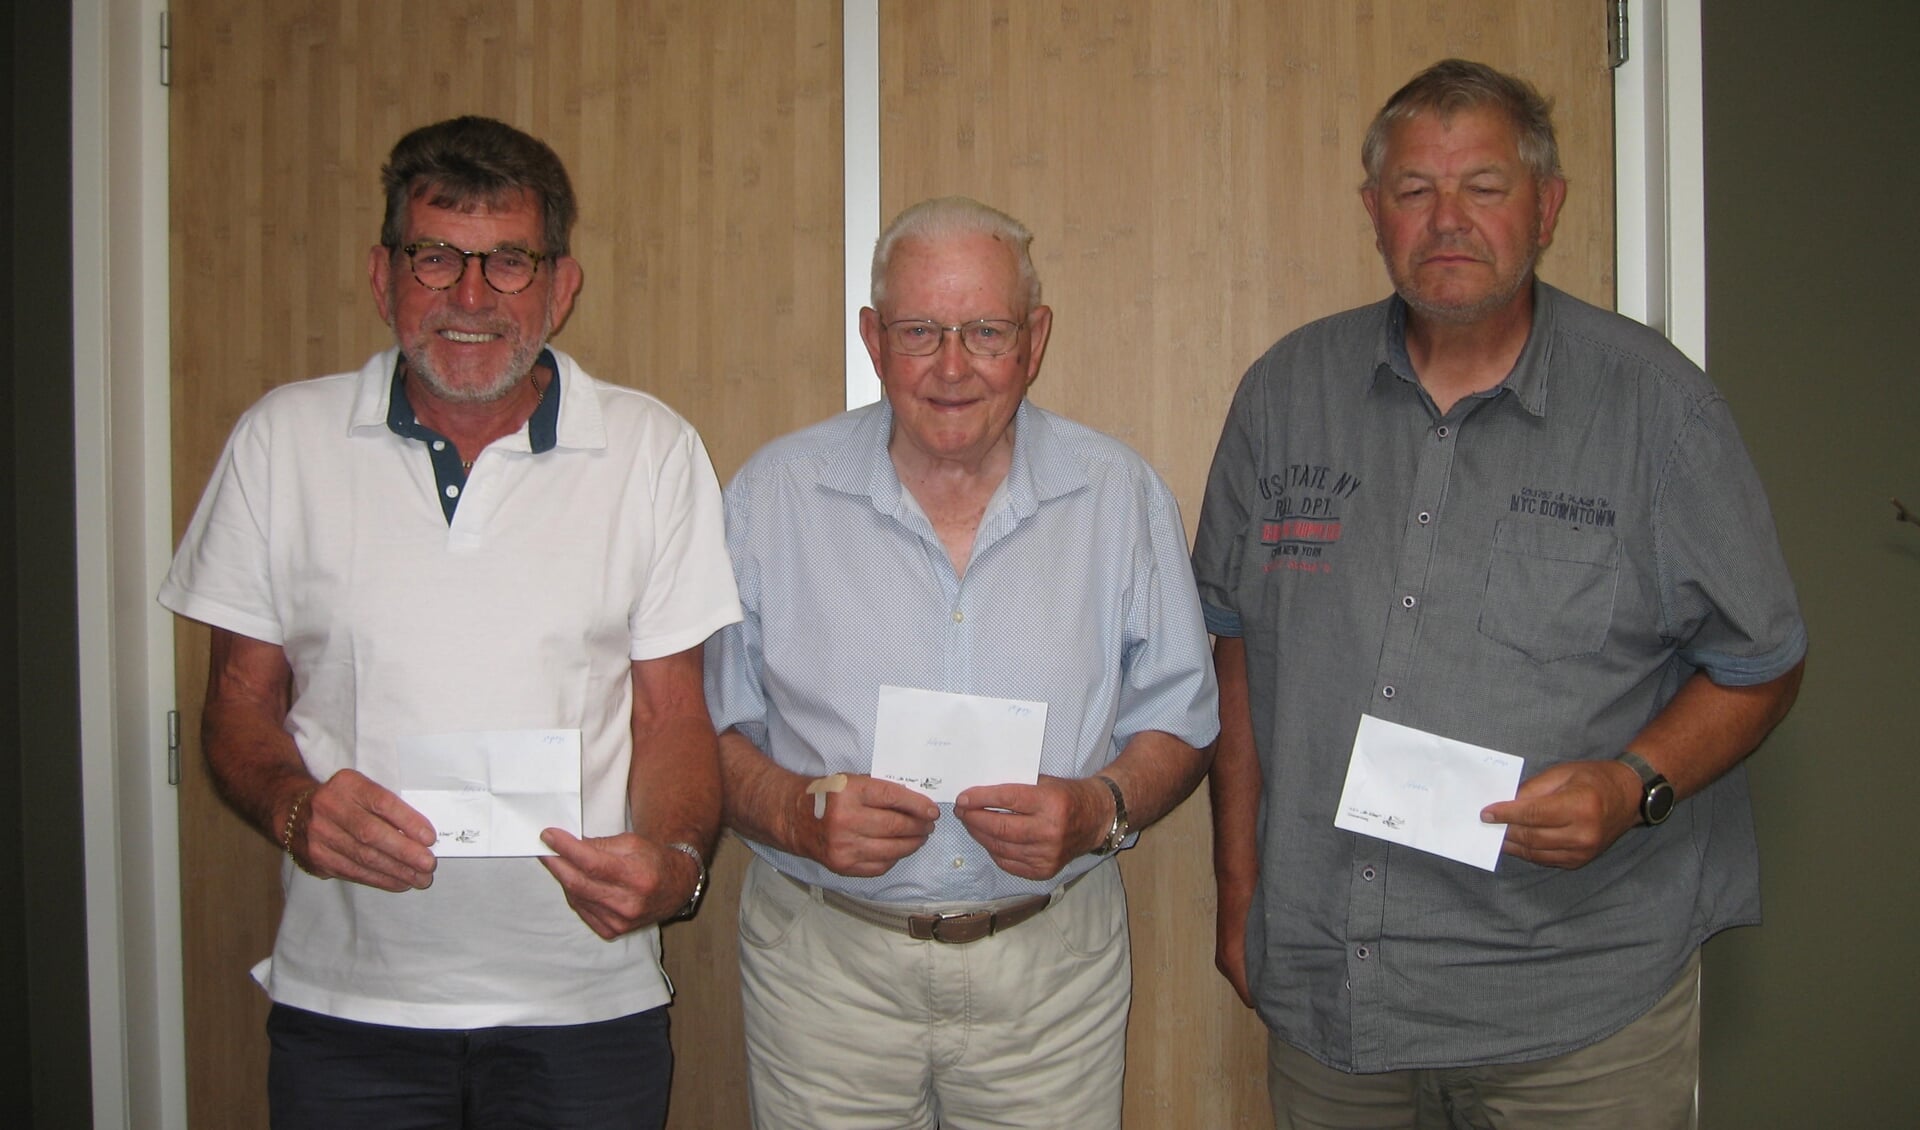 links: 3e E. Hartog, 1e Vas Rietveld, 2e C. Schot, winnaars heren